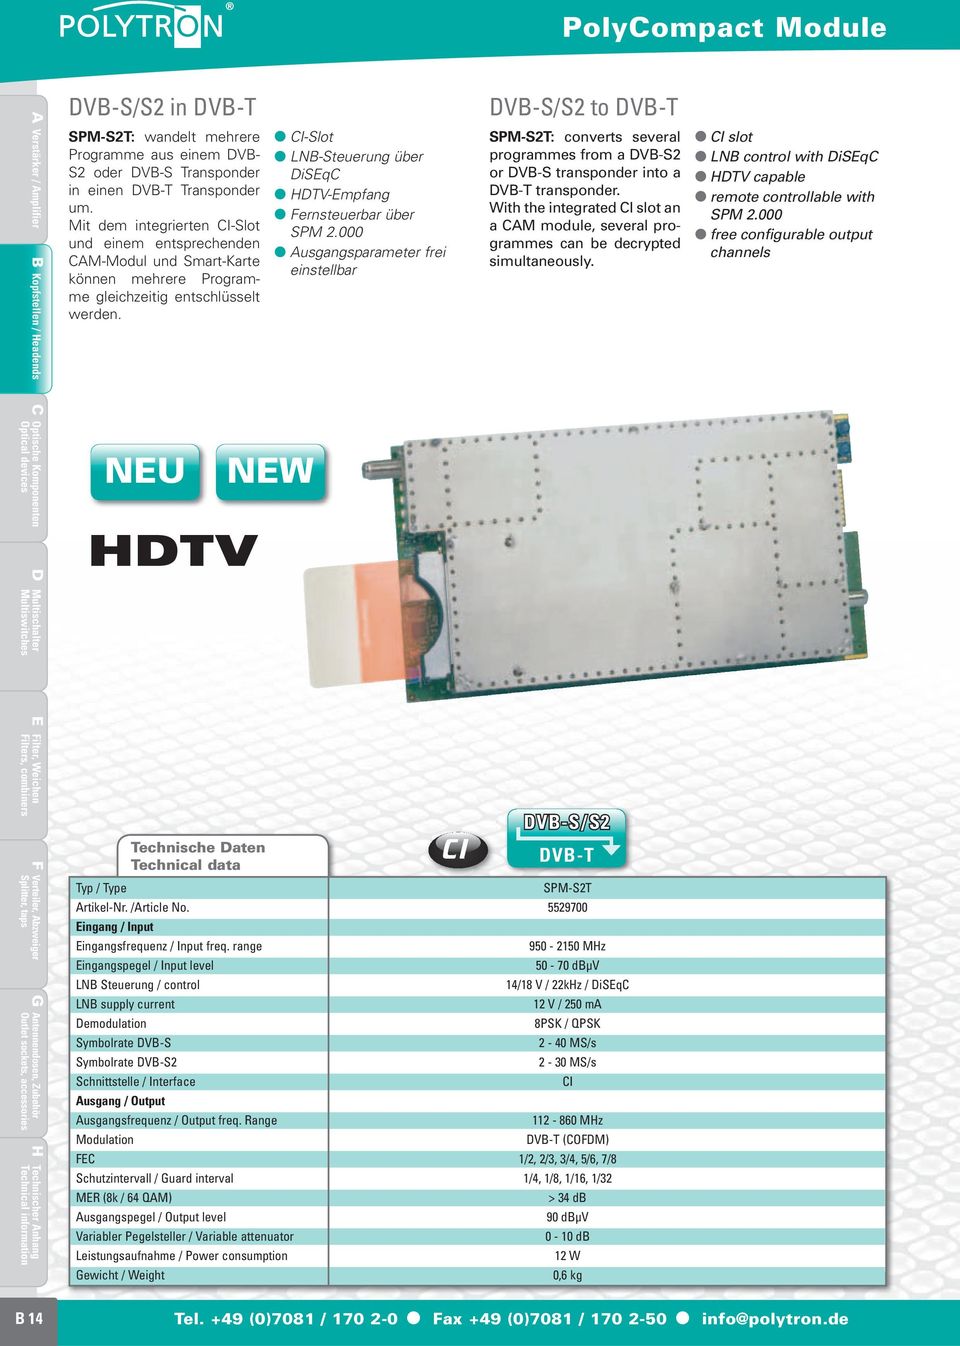 NEU NEW CI-Slot LNB-Steuerung über DiSEqC HDTV-Empfang Fernsteuerbar über SPM 2.